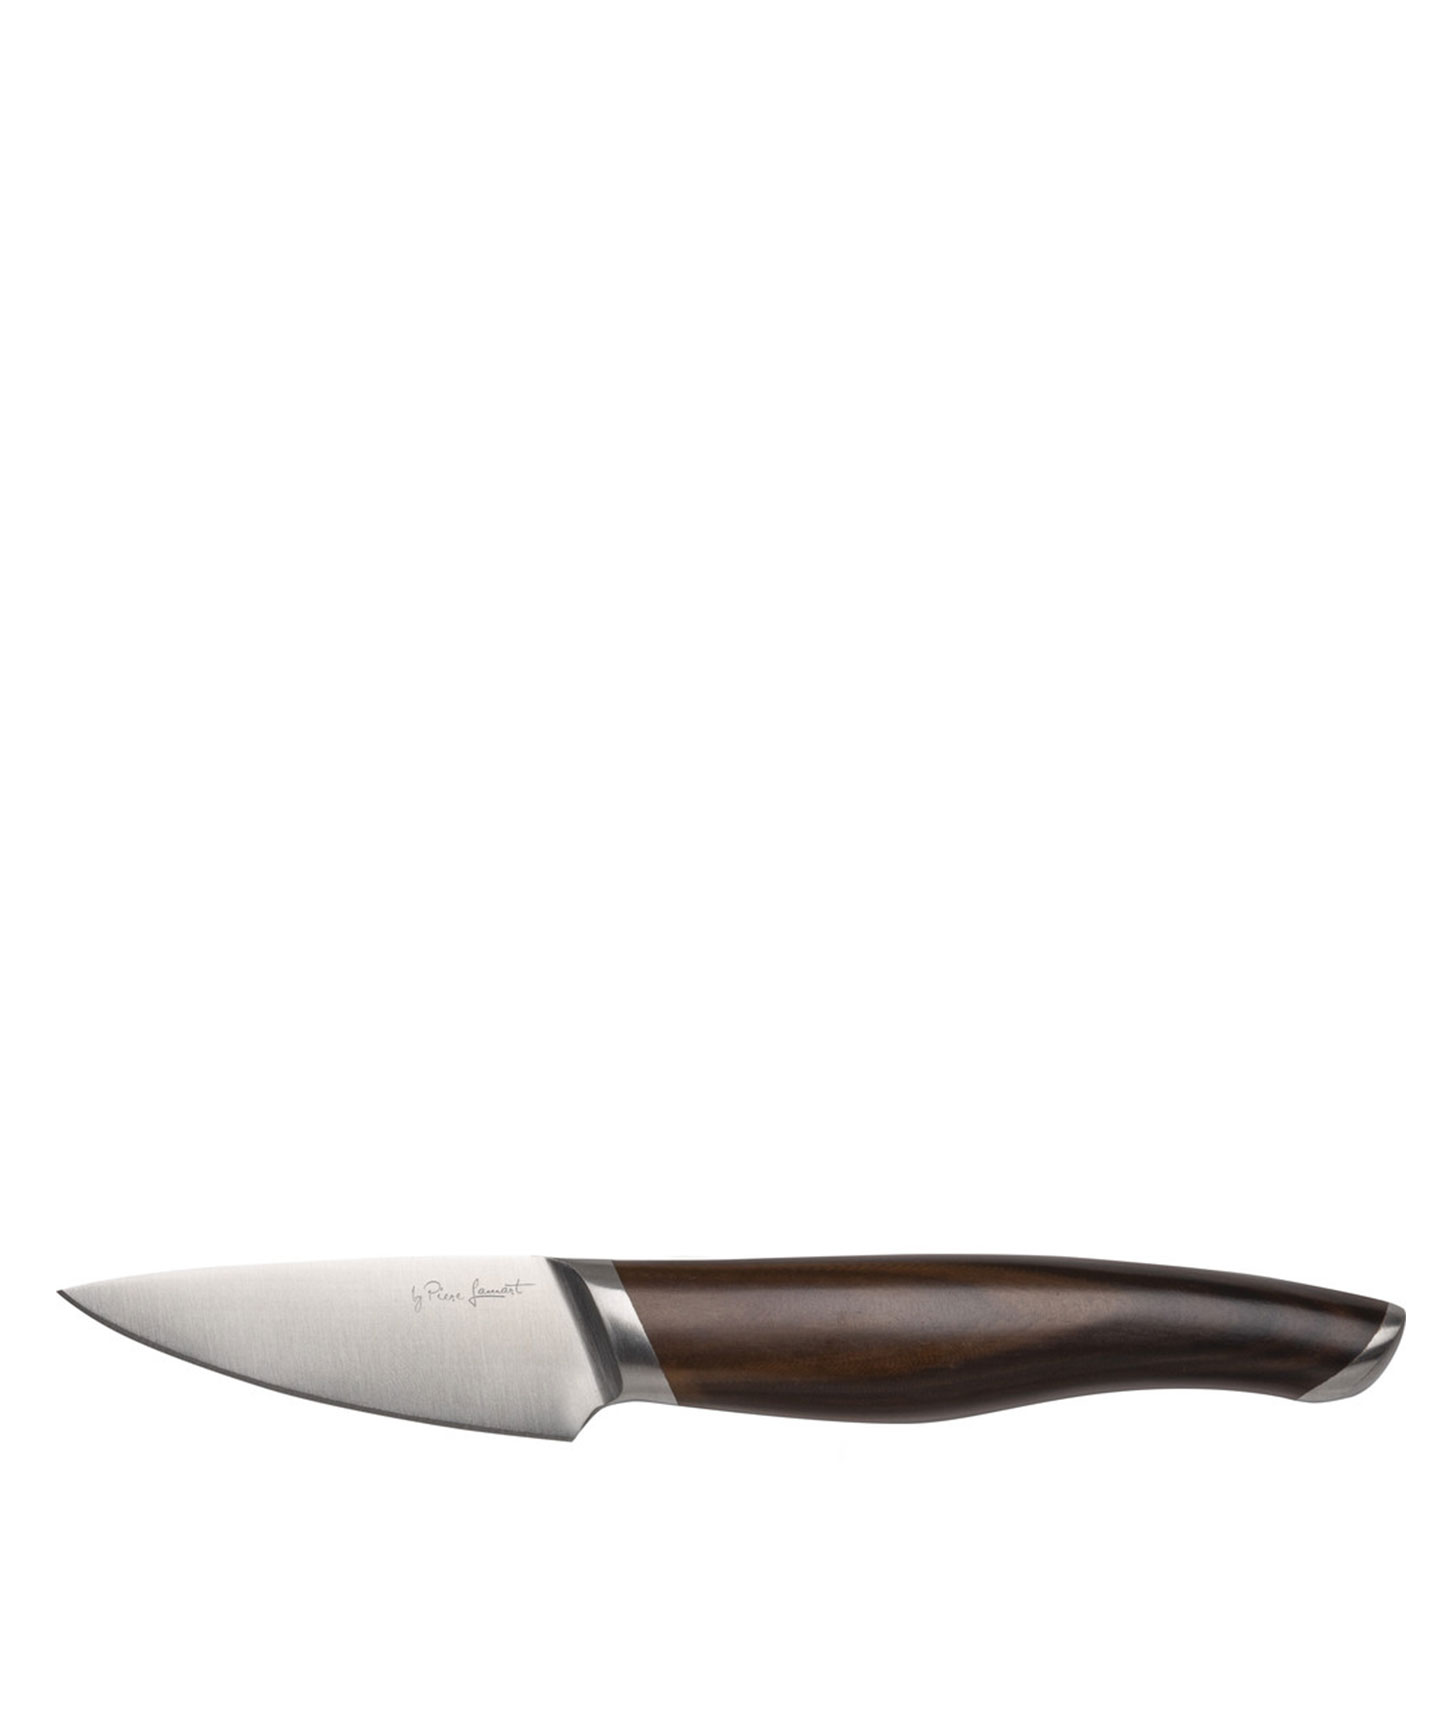 Кухонный нож Lamart Katana | LT 2121